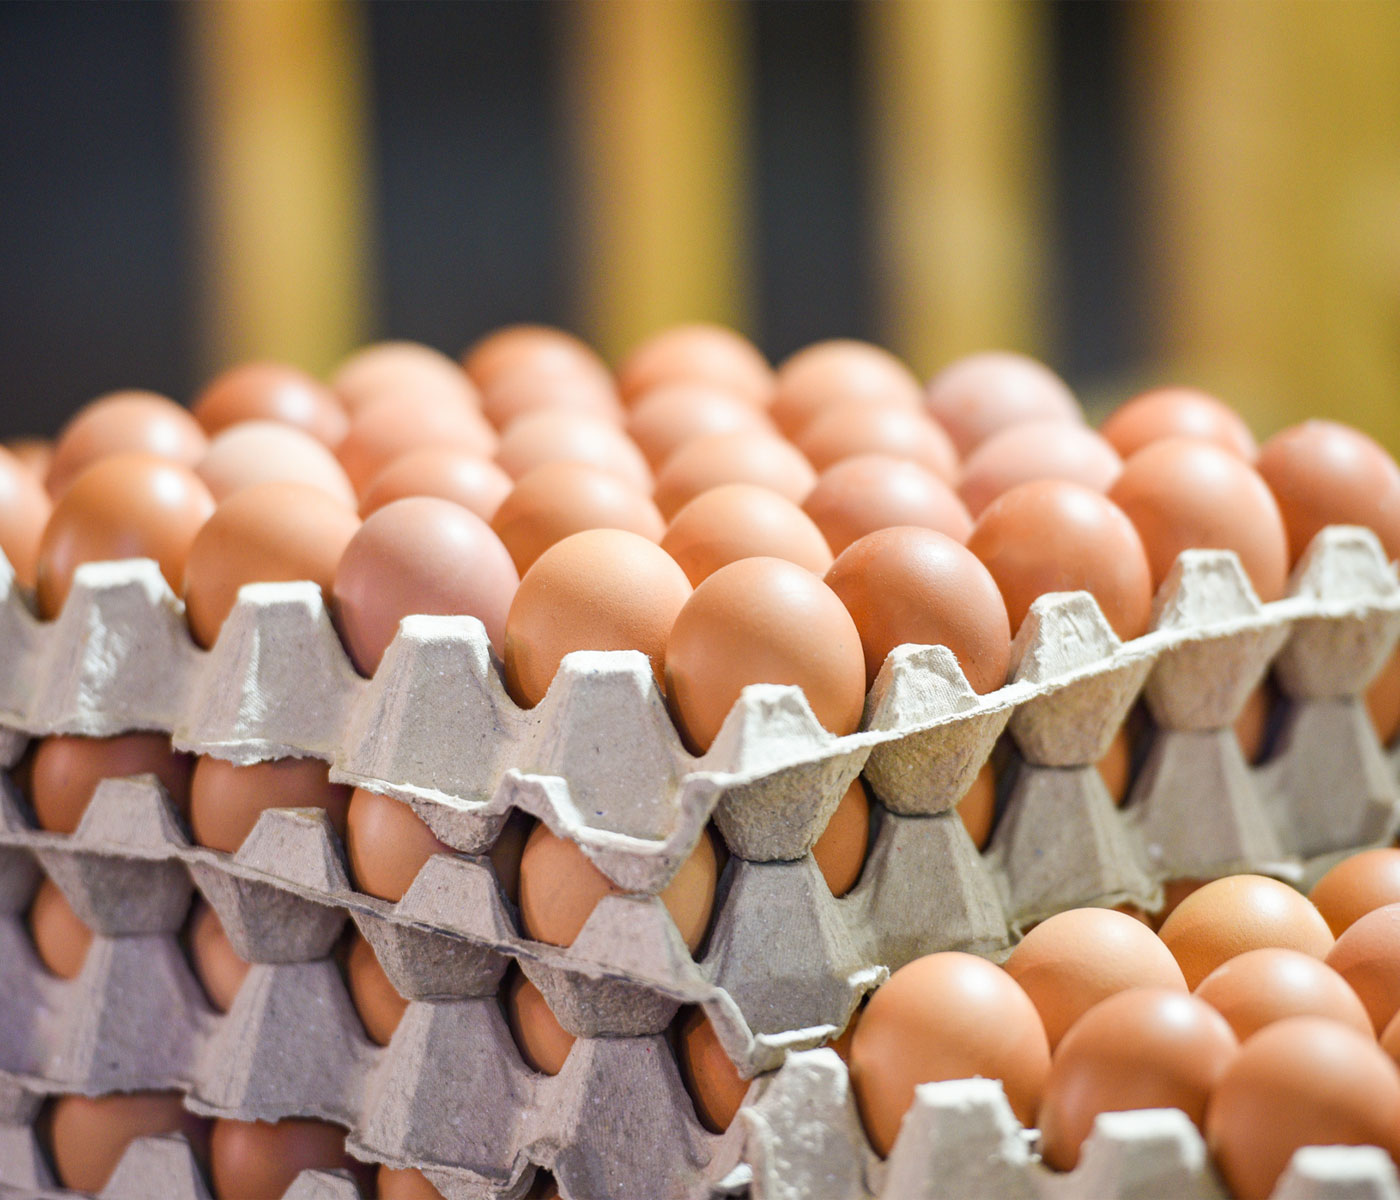 La comisión avanza en la revisión de la normativa de comercialización de los huevos